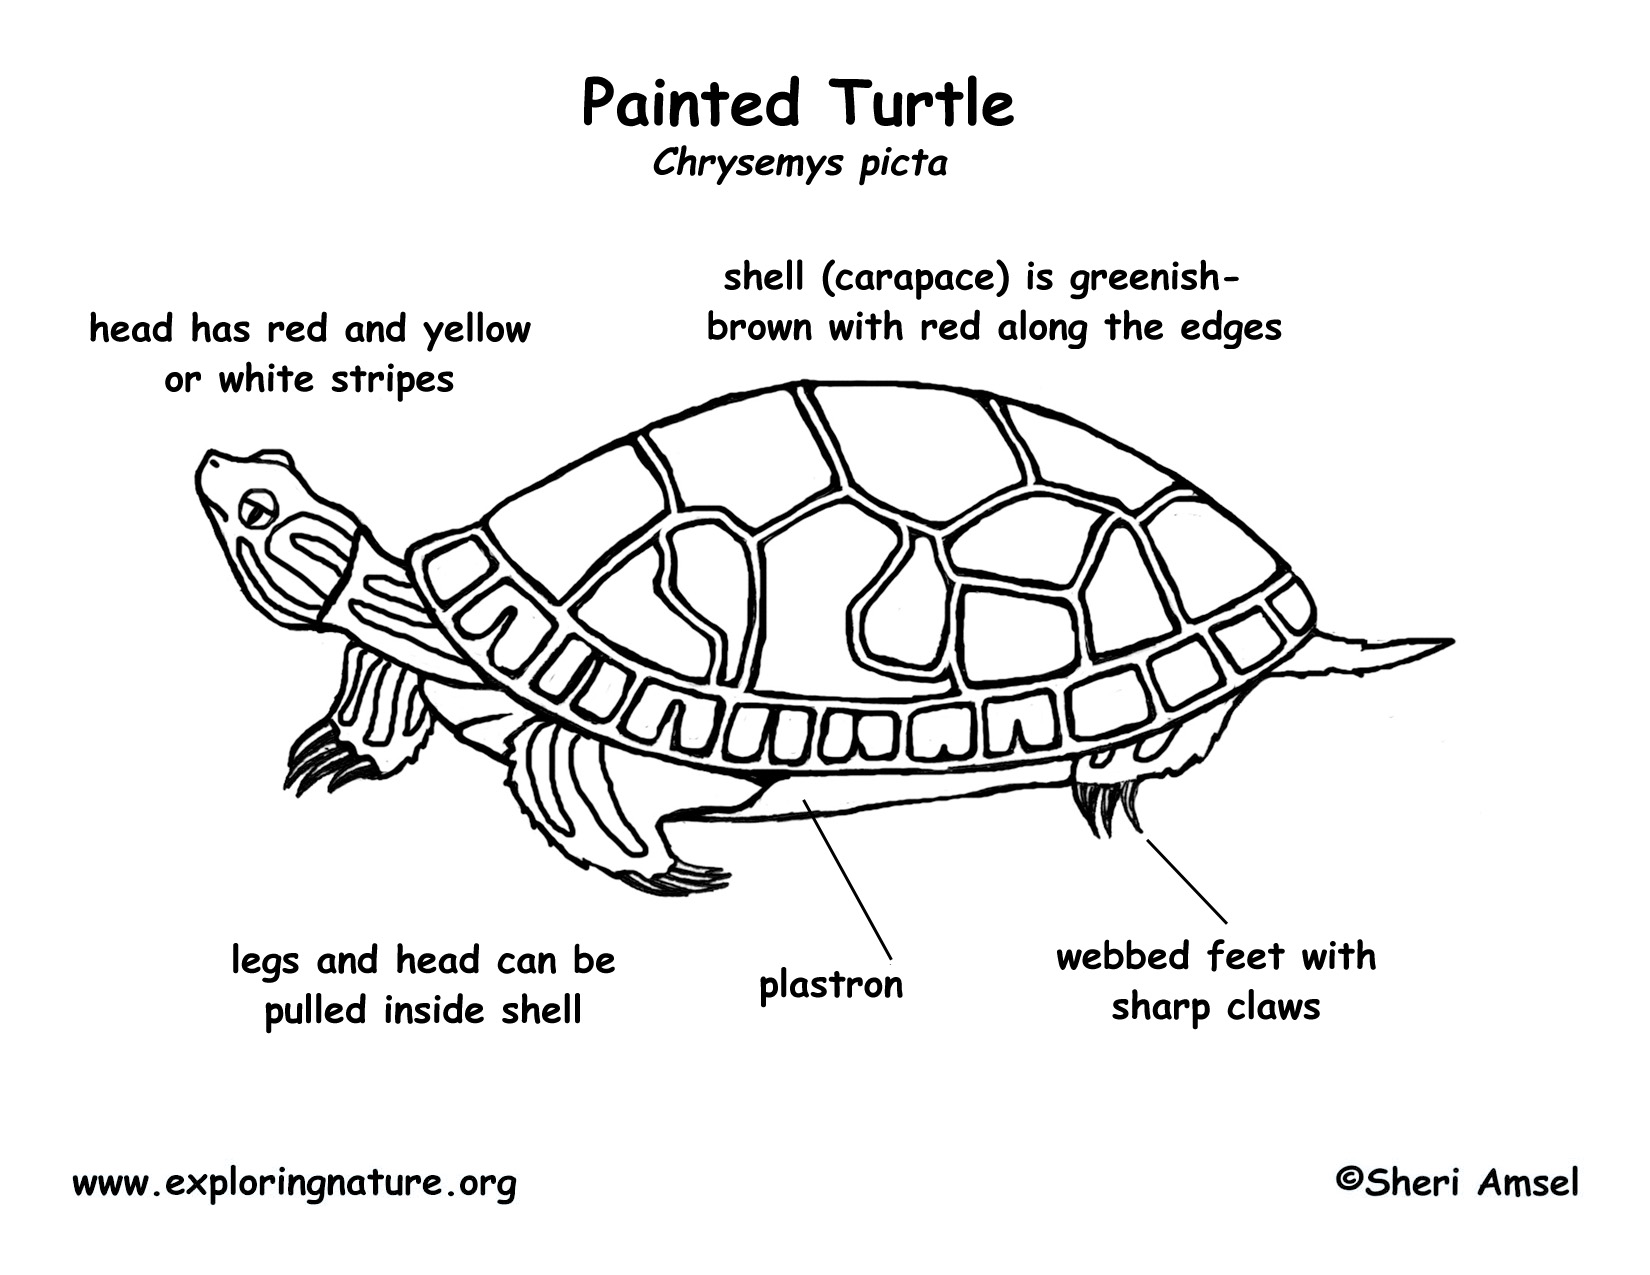 Turtle (Painted)